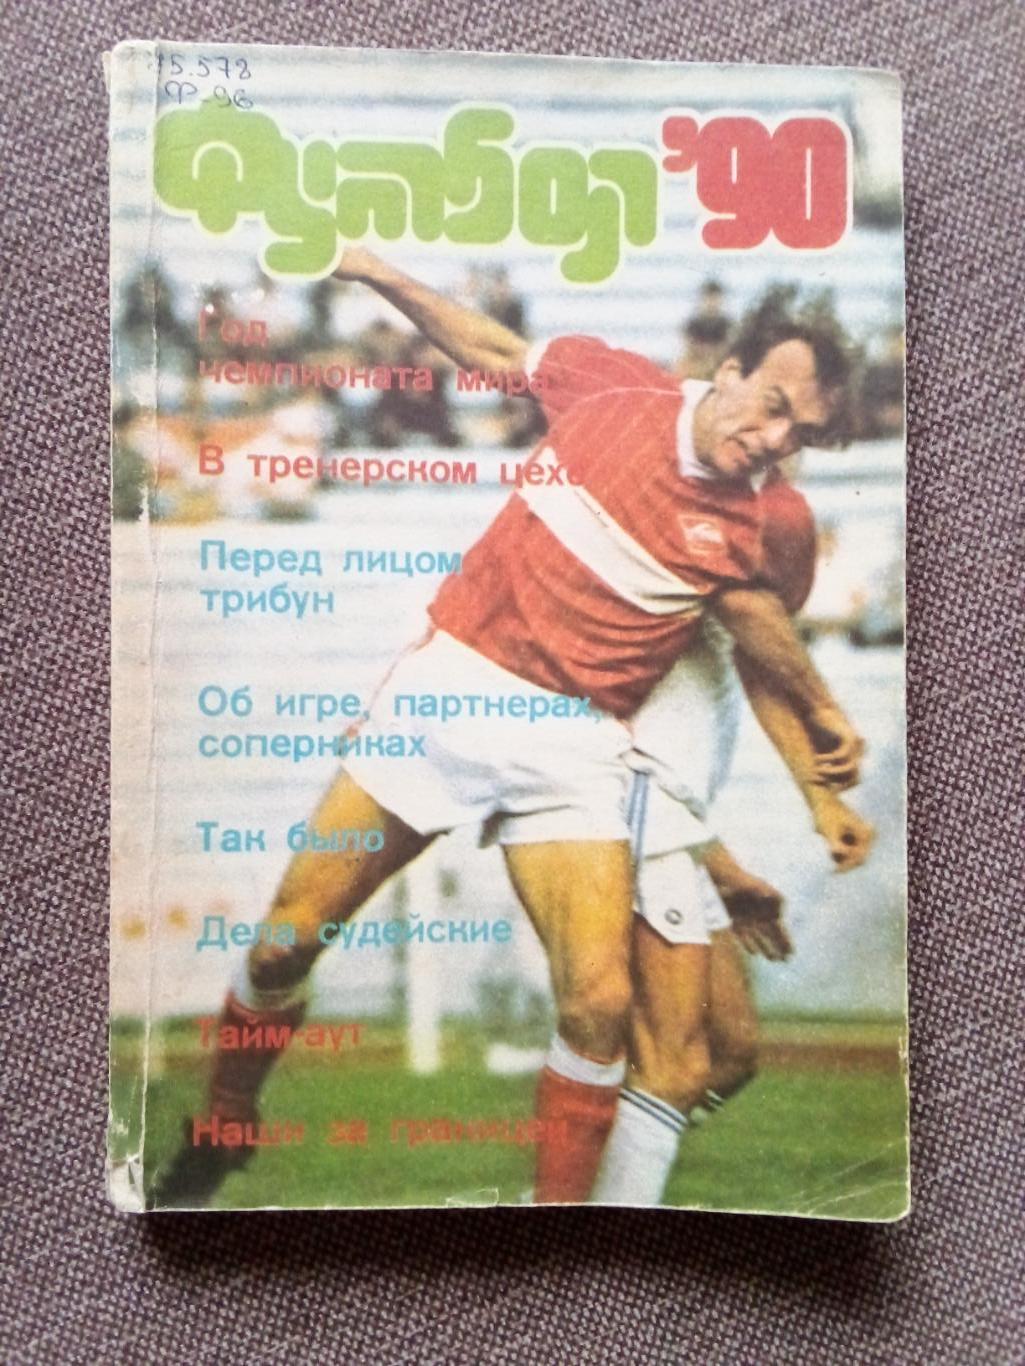 Альманах Футбол - 90 1990 г. (Спорт) Иллюстрированное издание (ФК Спартак)